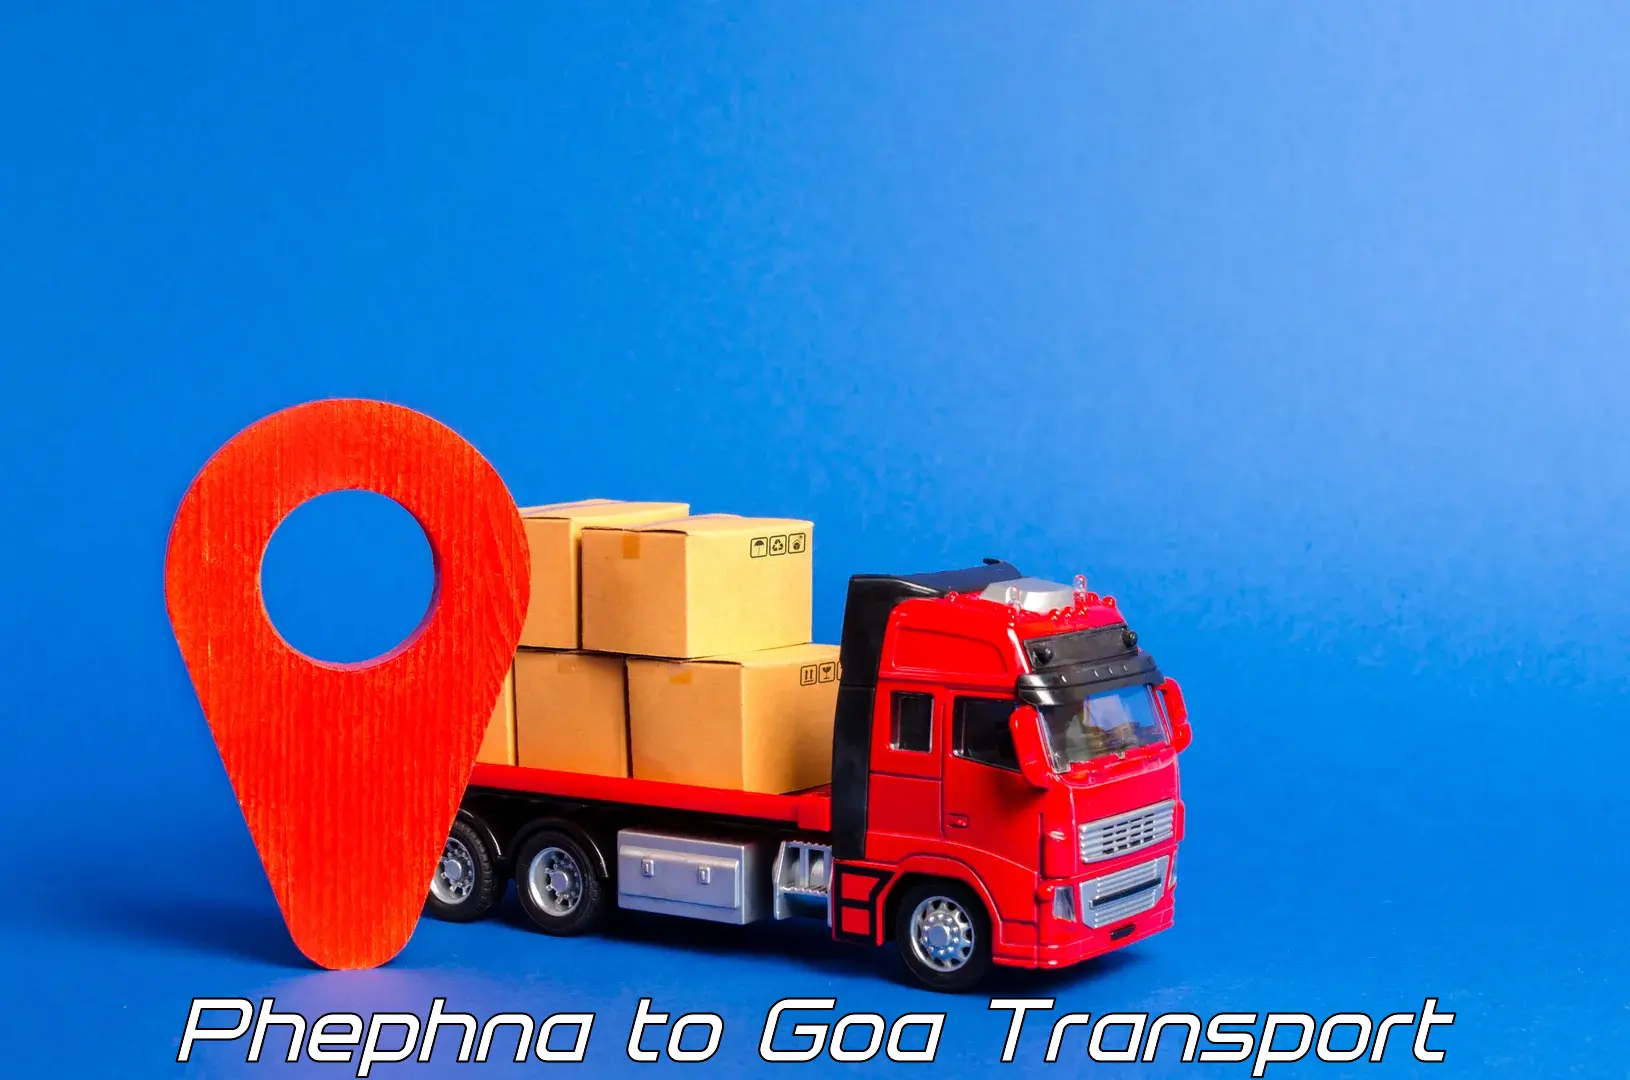 Transportation services Phephna to Goa